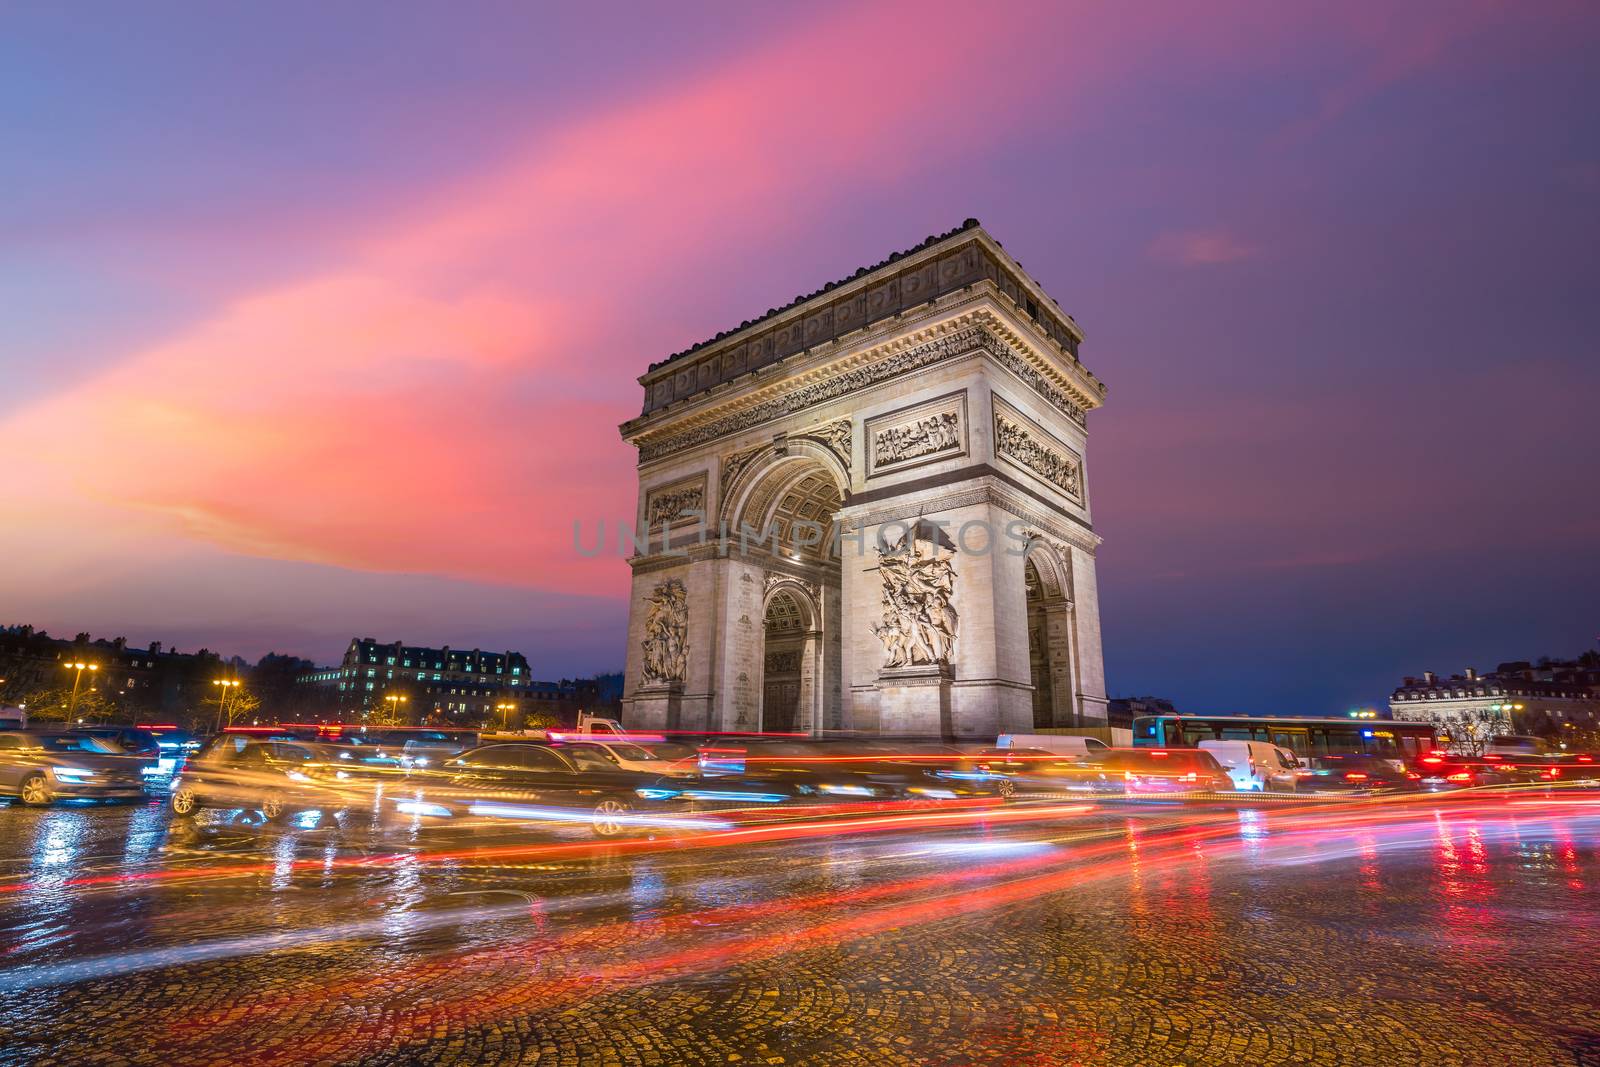 Arc de Triumph in Paris, France by f11photo